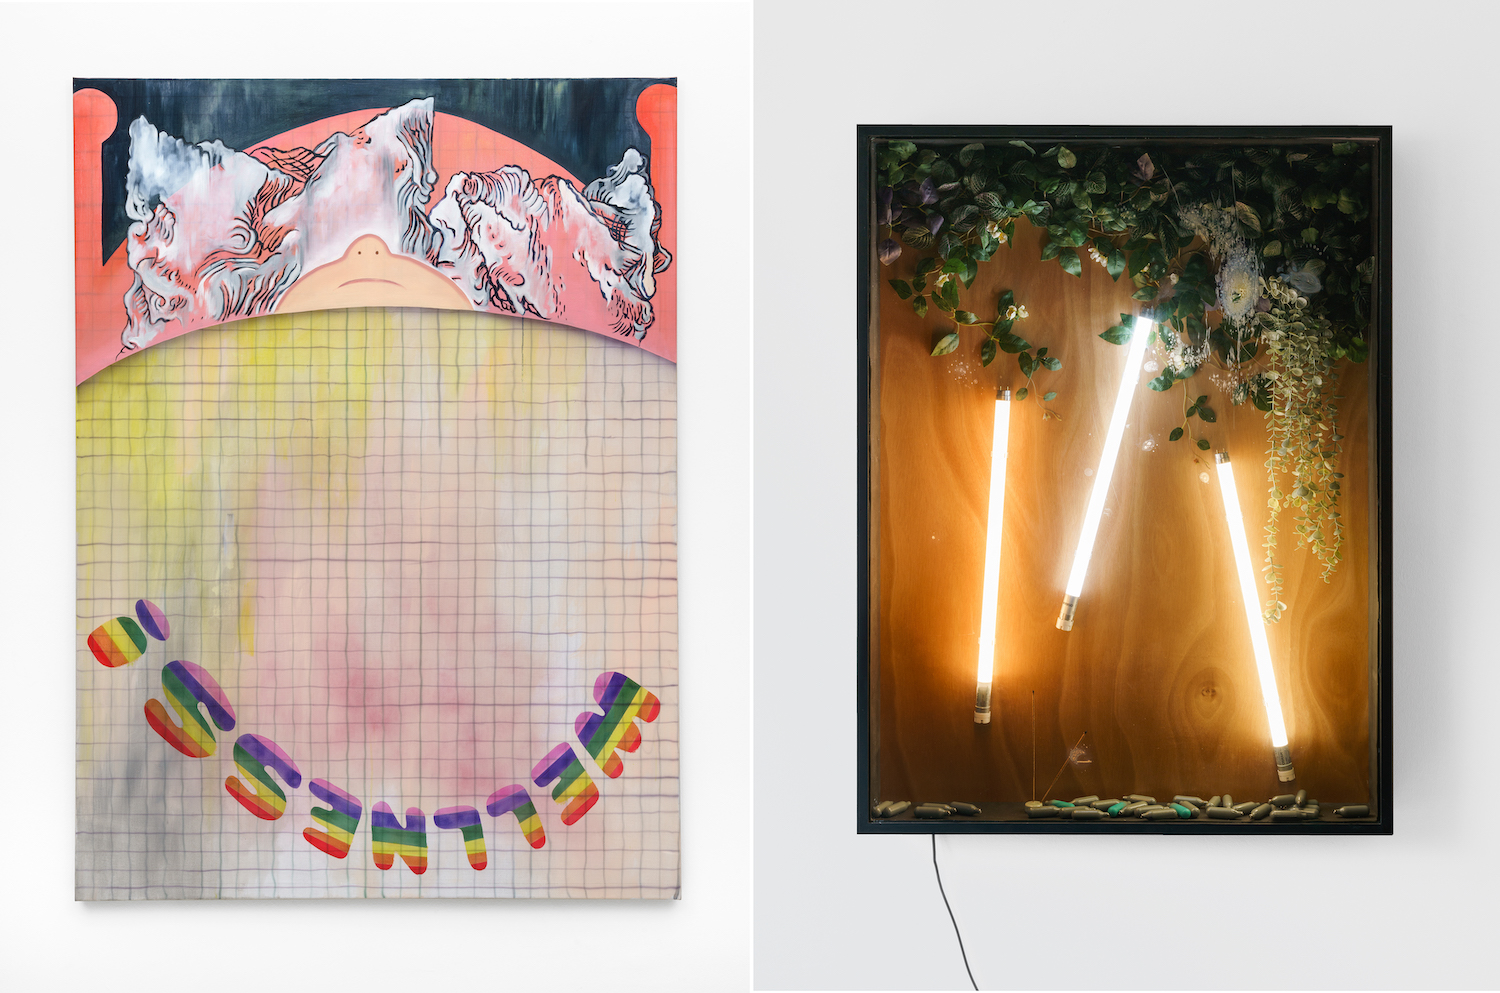 Links eine Malerei, oben ist eine Prust zu erkennen, unten steht der Schriftzug "Wellness!" in Regenbogenfarben auf dem Kopf. Rechts eine Wandskulptur, in einem Glaskasten sind Plastikpflanzen, Soda-Kapseln, Räucherstäbchen und LED-Röhren arrangiert.